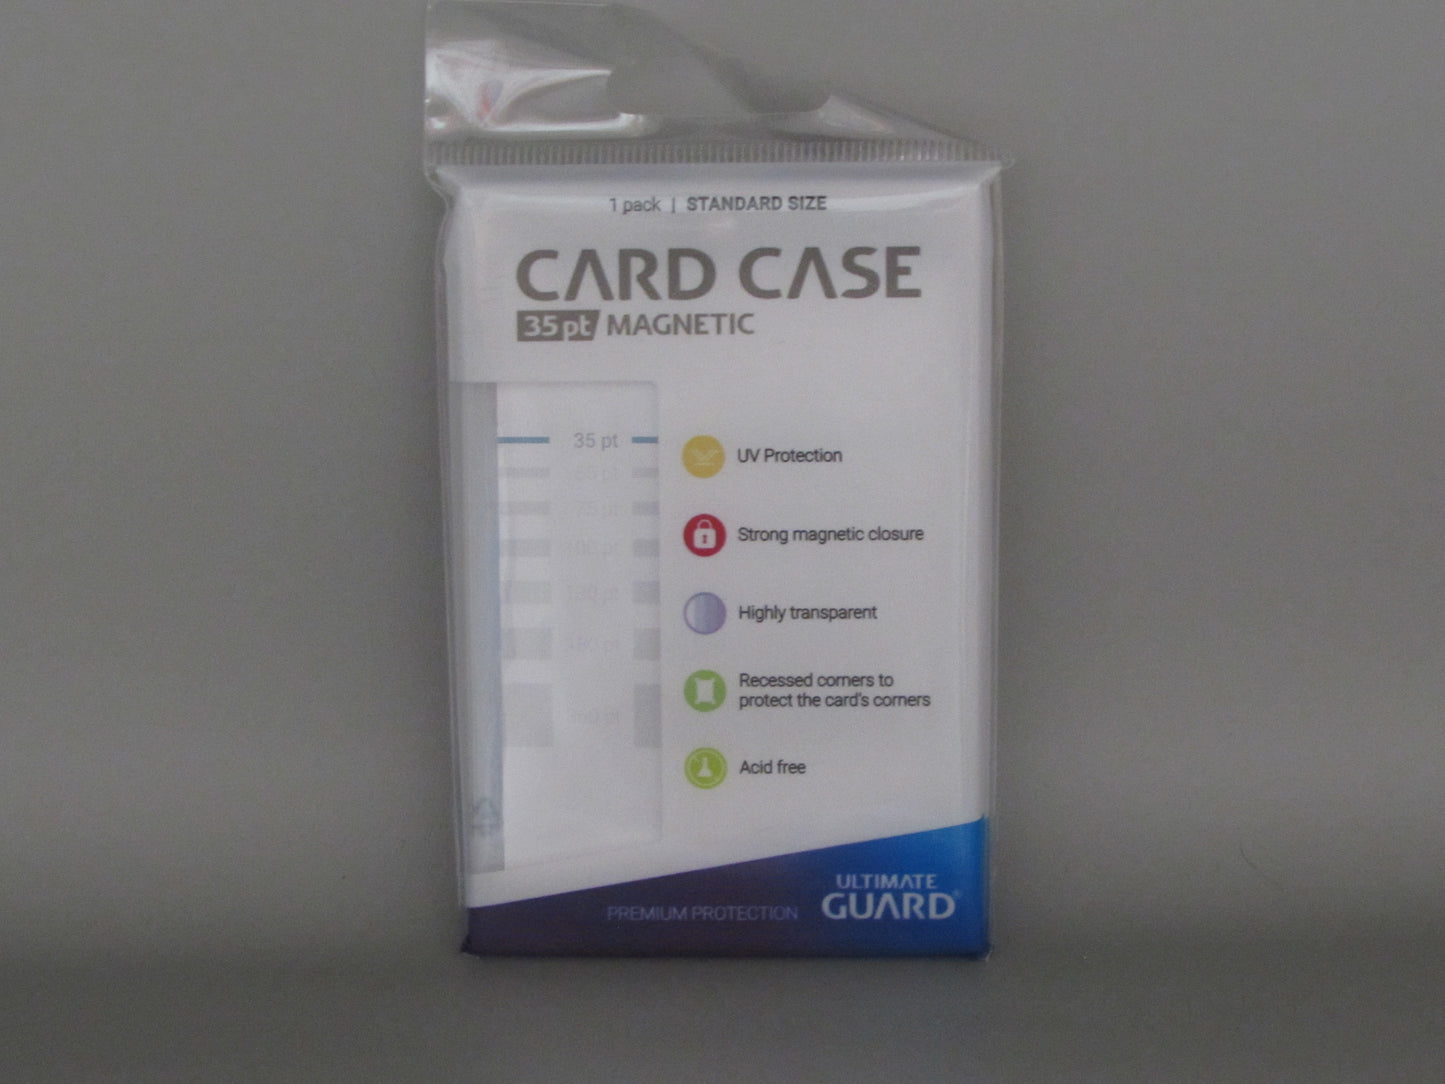 Ultmate gaurd 35pt card case magnetic